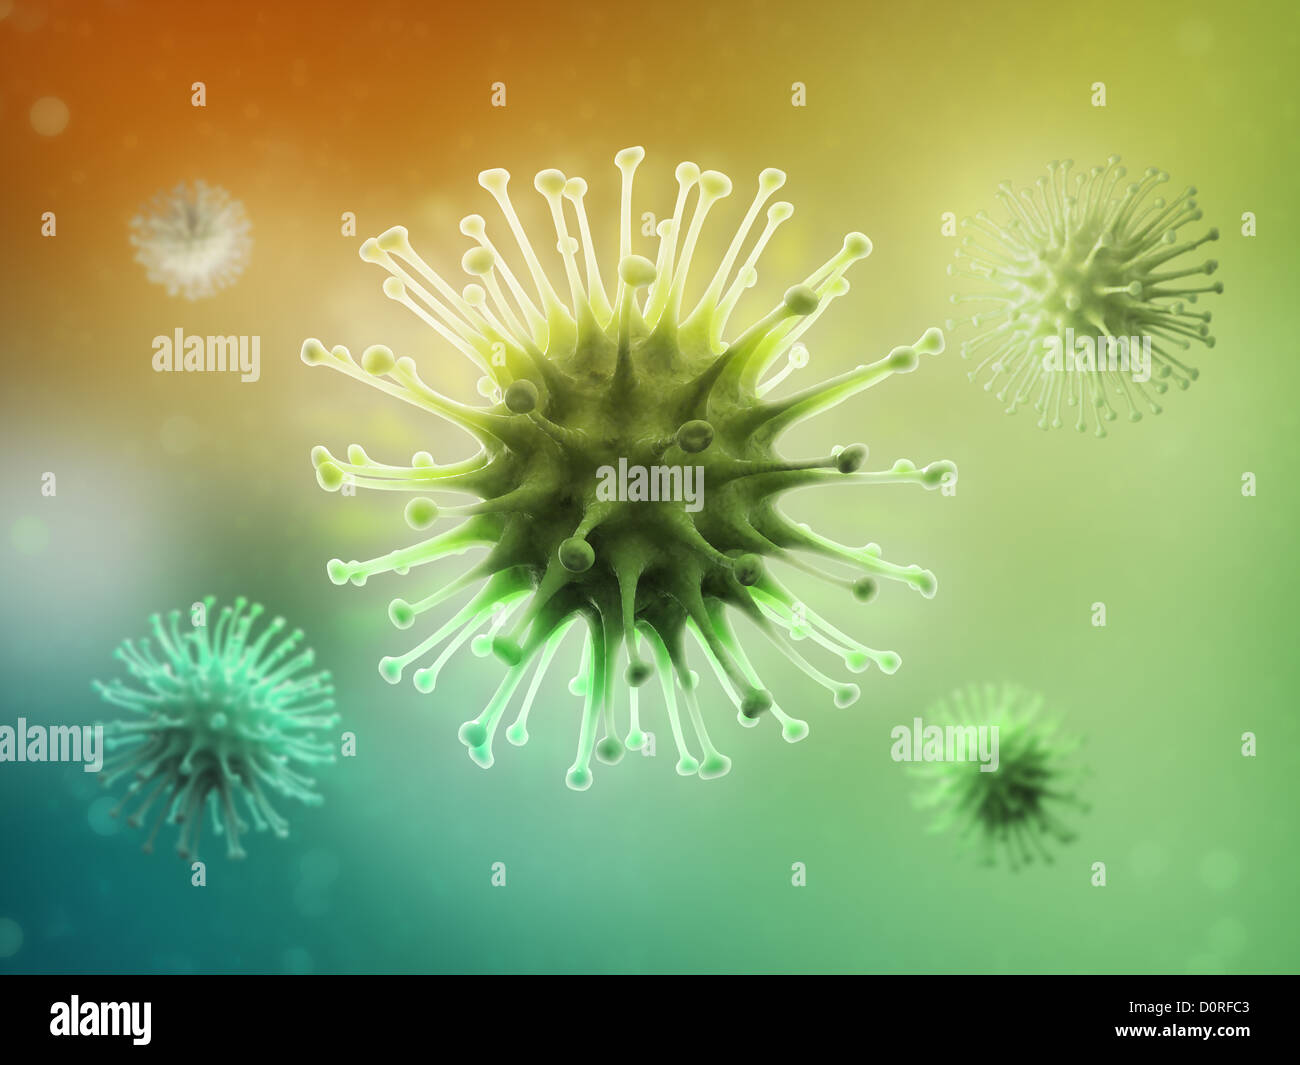 Ilustración Científica de virus Foto de stock